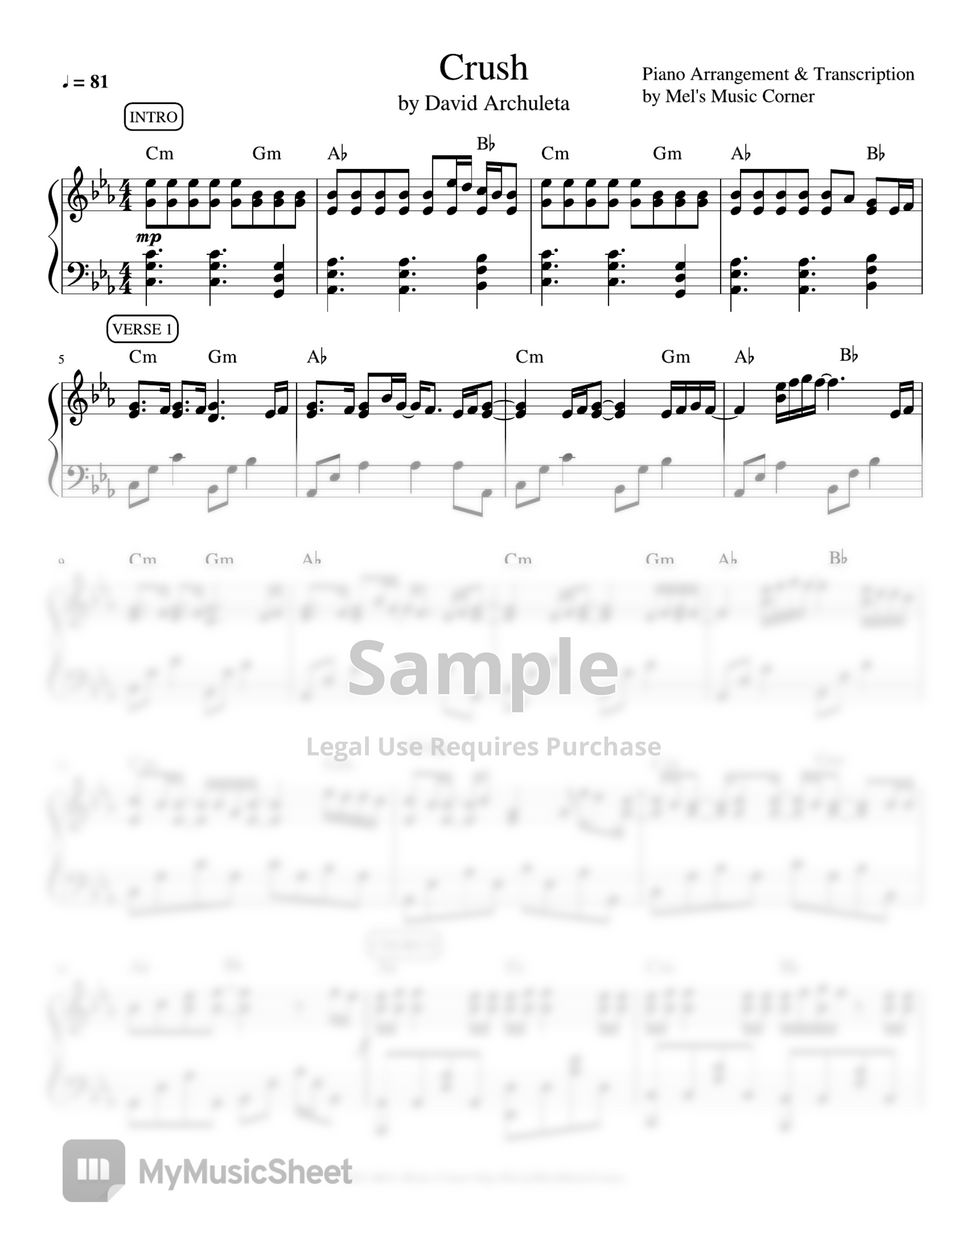 David Archuleta - Crush (piano sheet music) by Mel's Music Corner